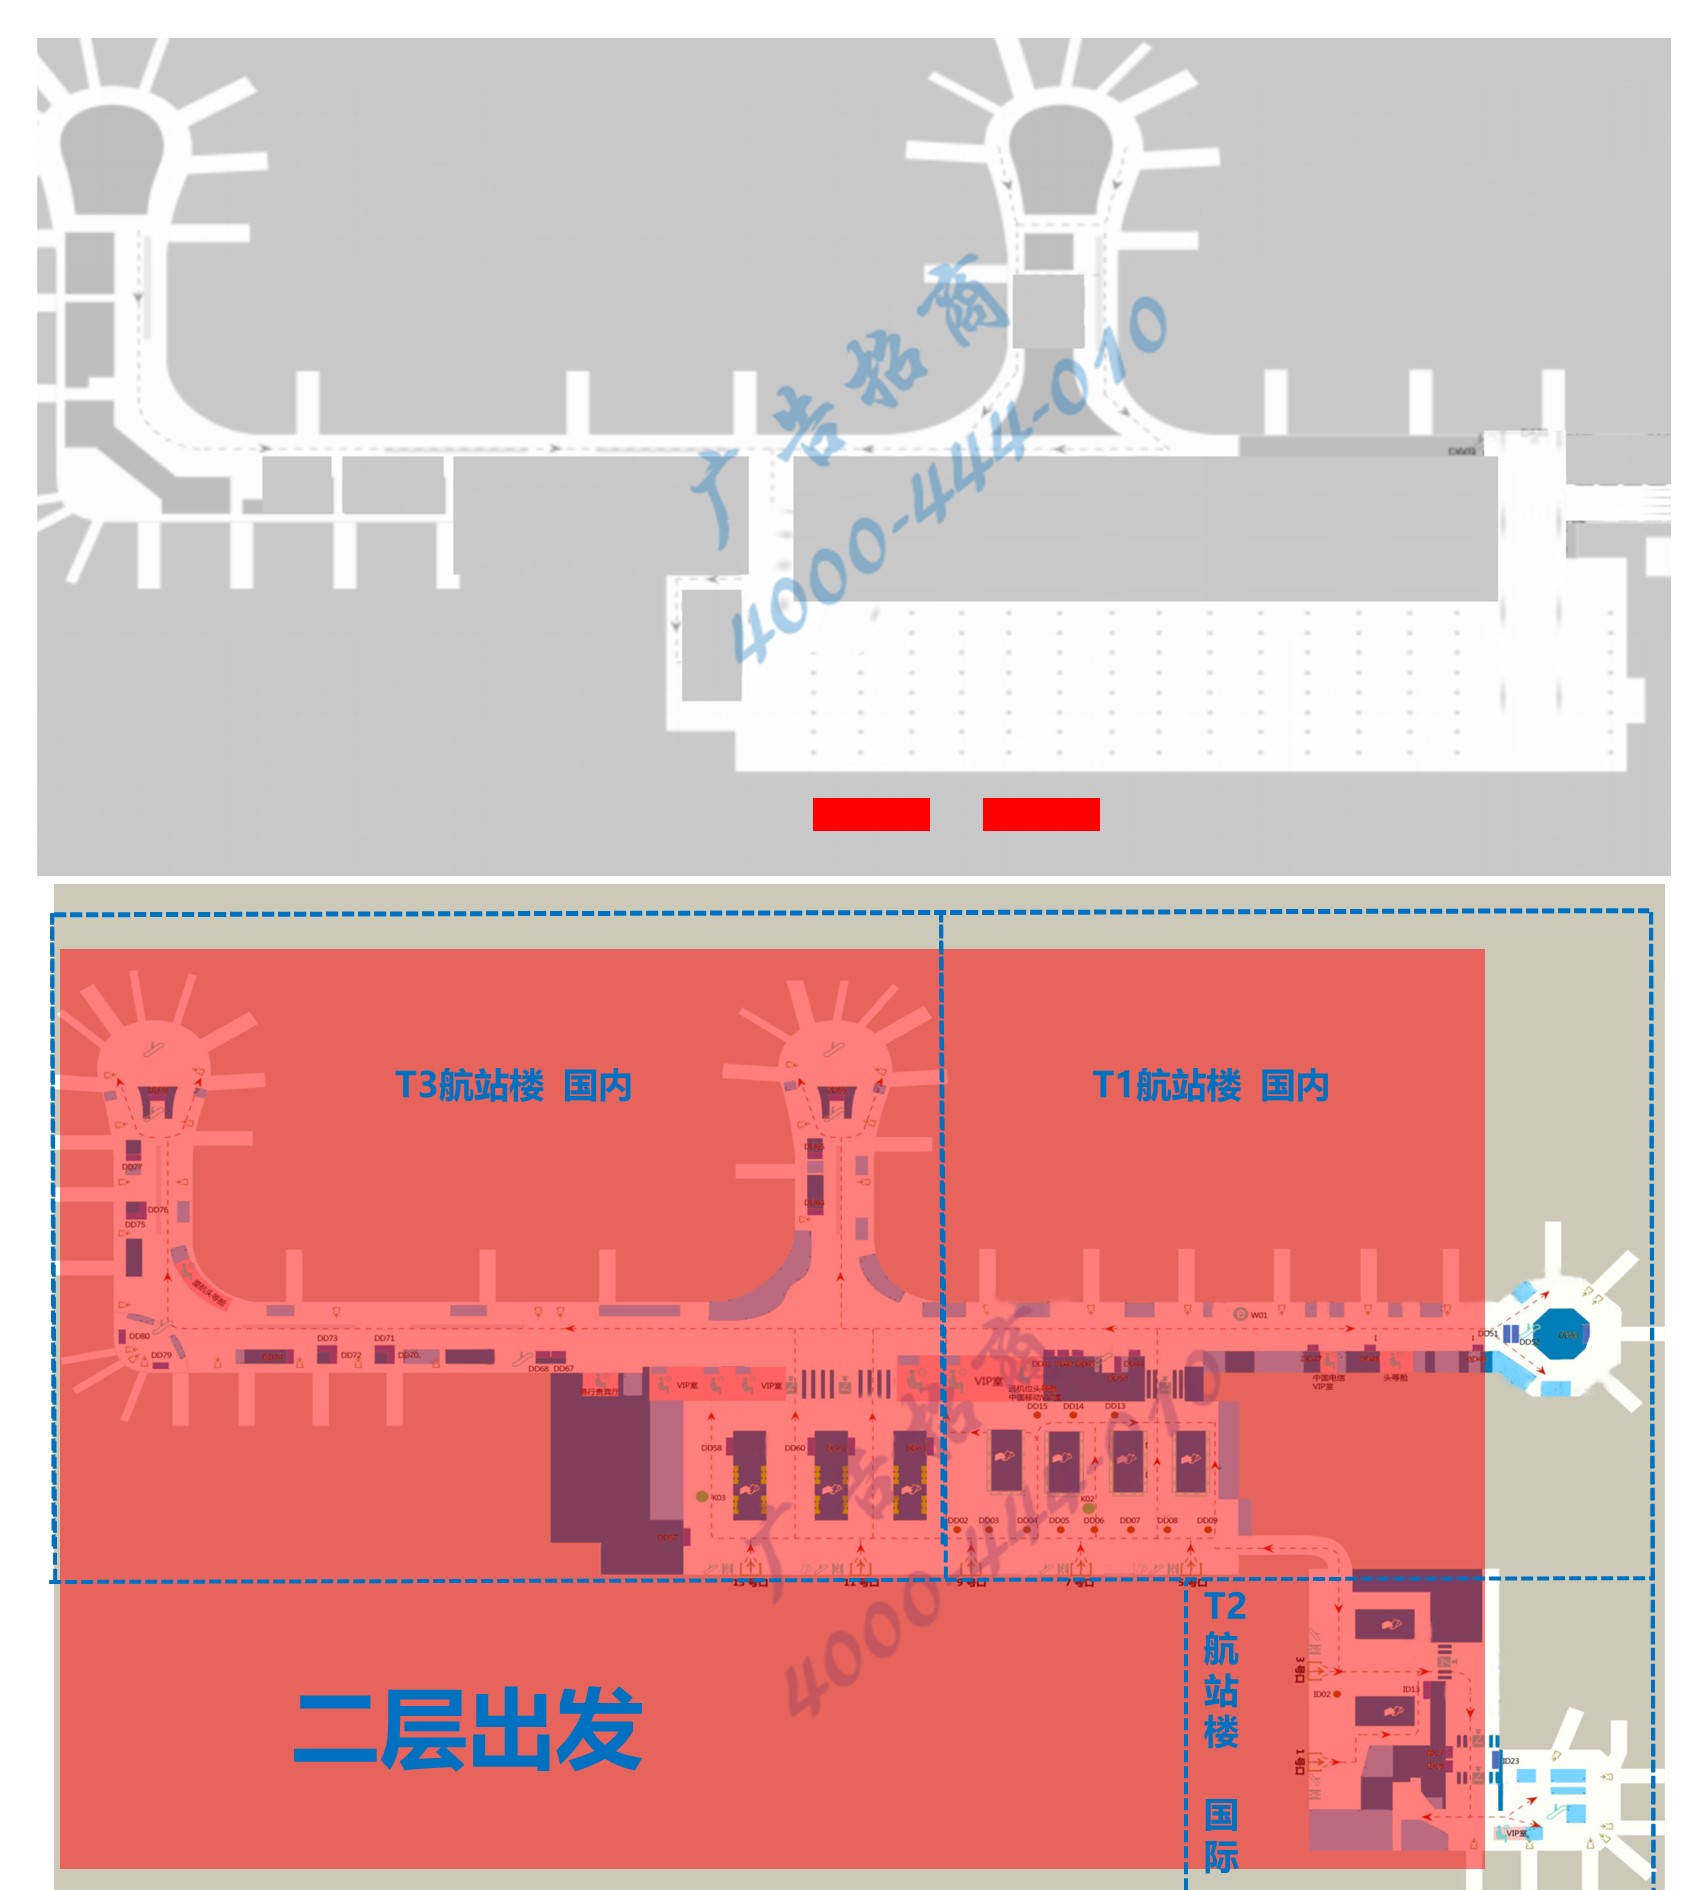 杭州萧山机场广告-T3到达出租车区灯箱TAXI01位置图